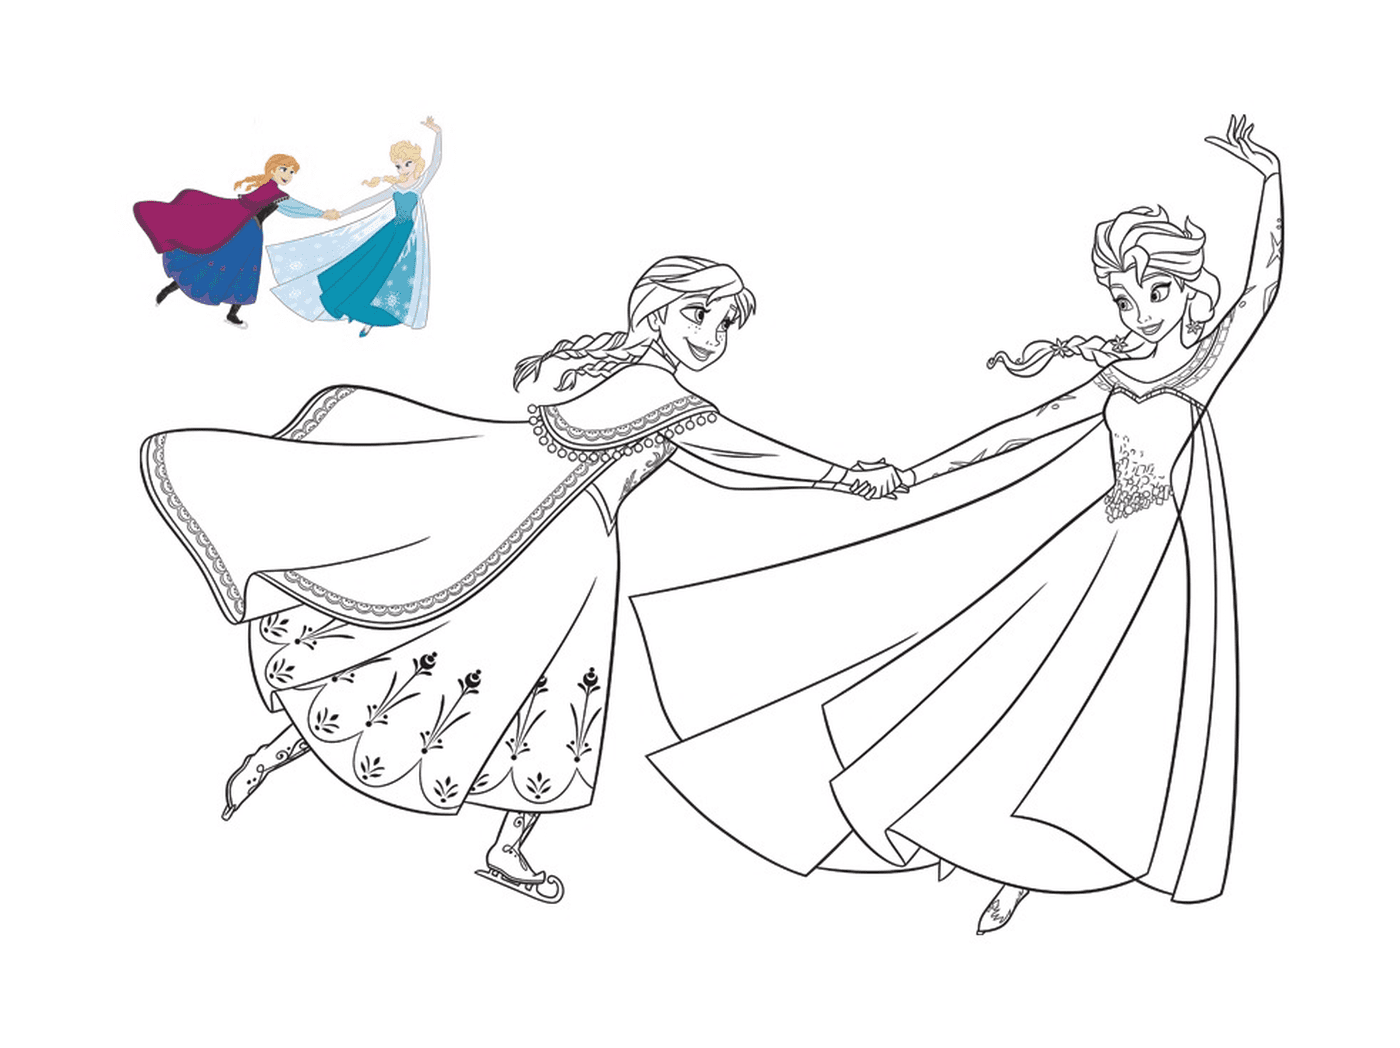  Elsa und Anna skaten glücklich 